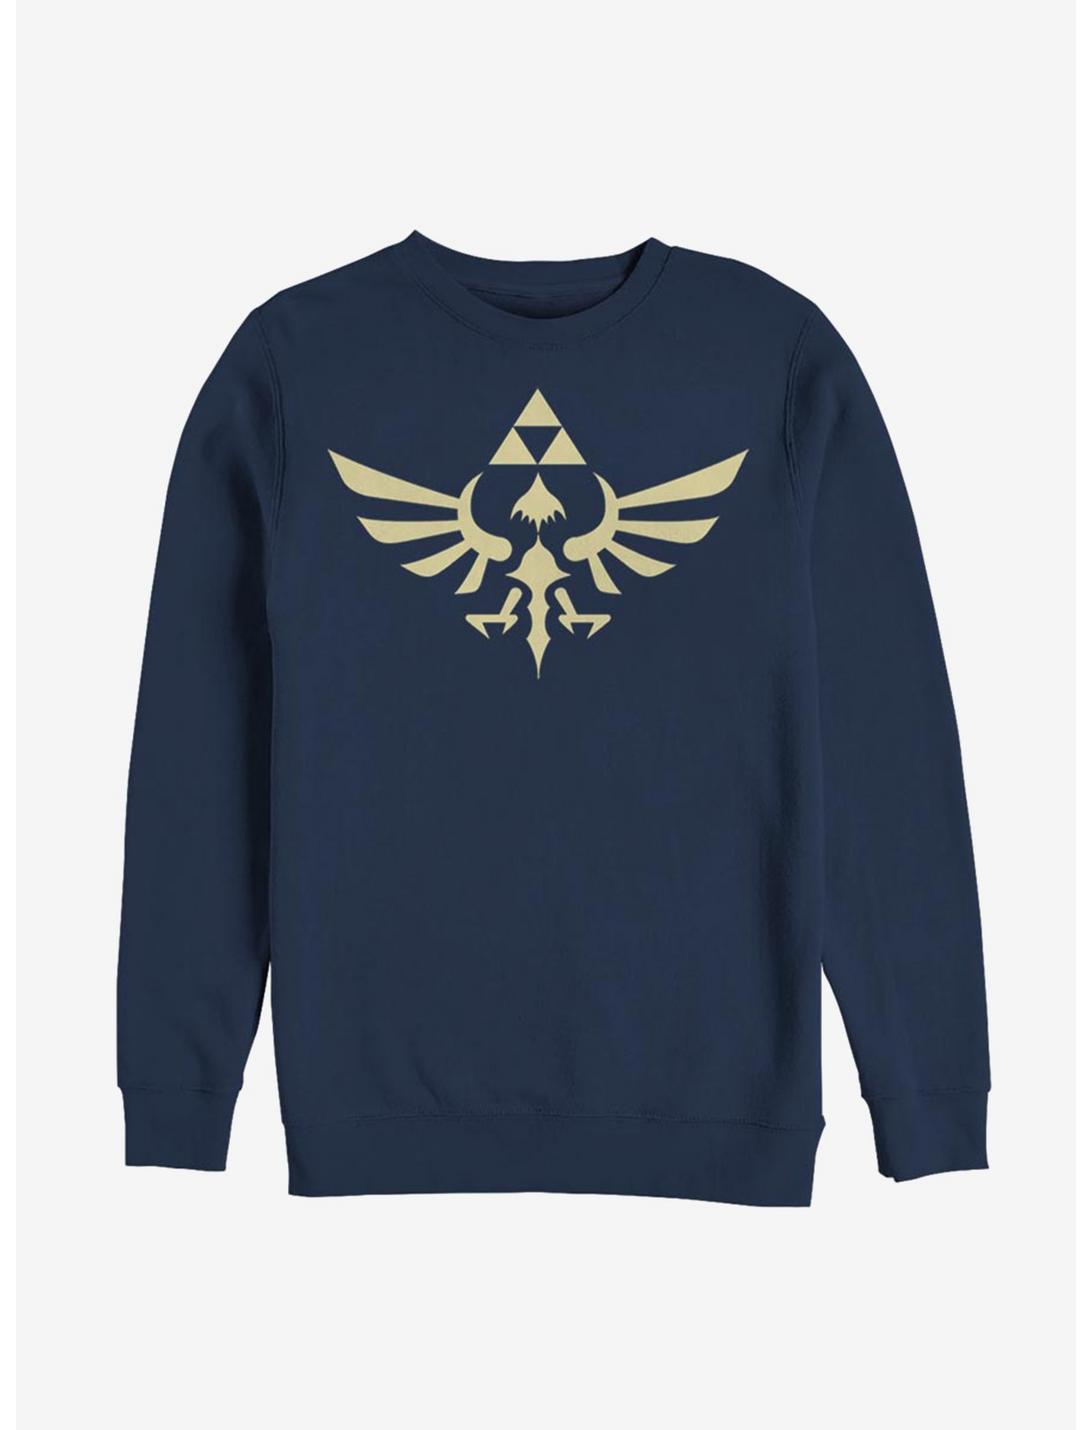 Nintendo The Legend of Zelda Triumphant Triforce Sweatshirt, NAVY, hi-res